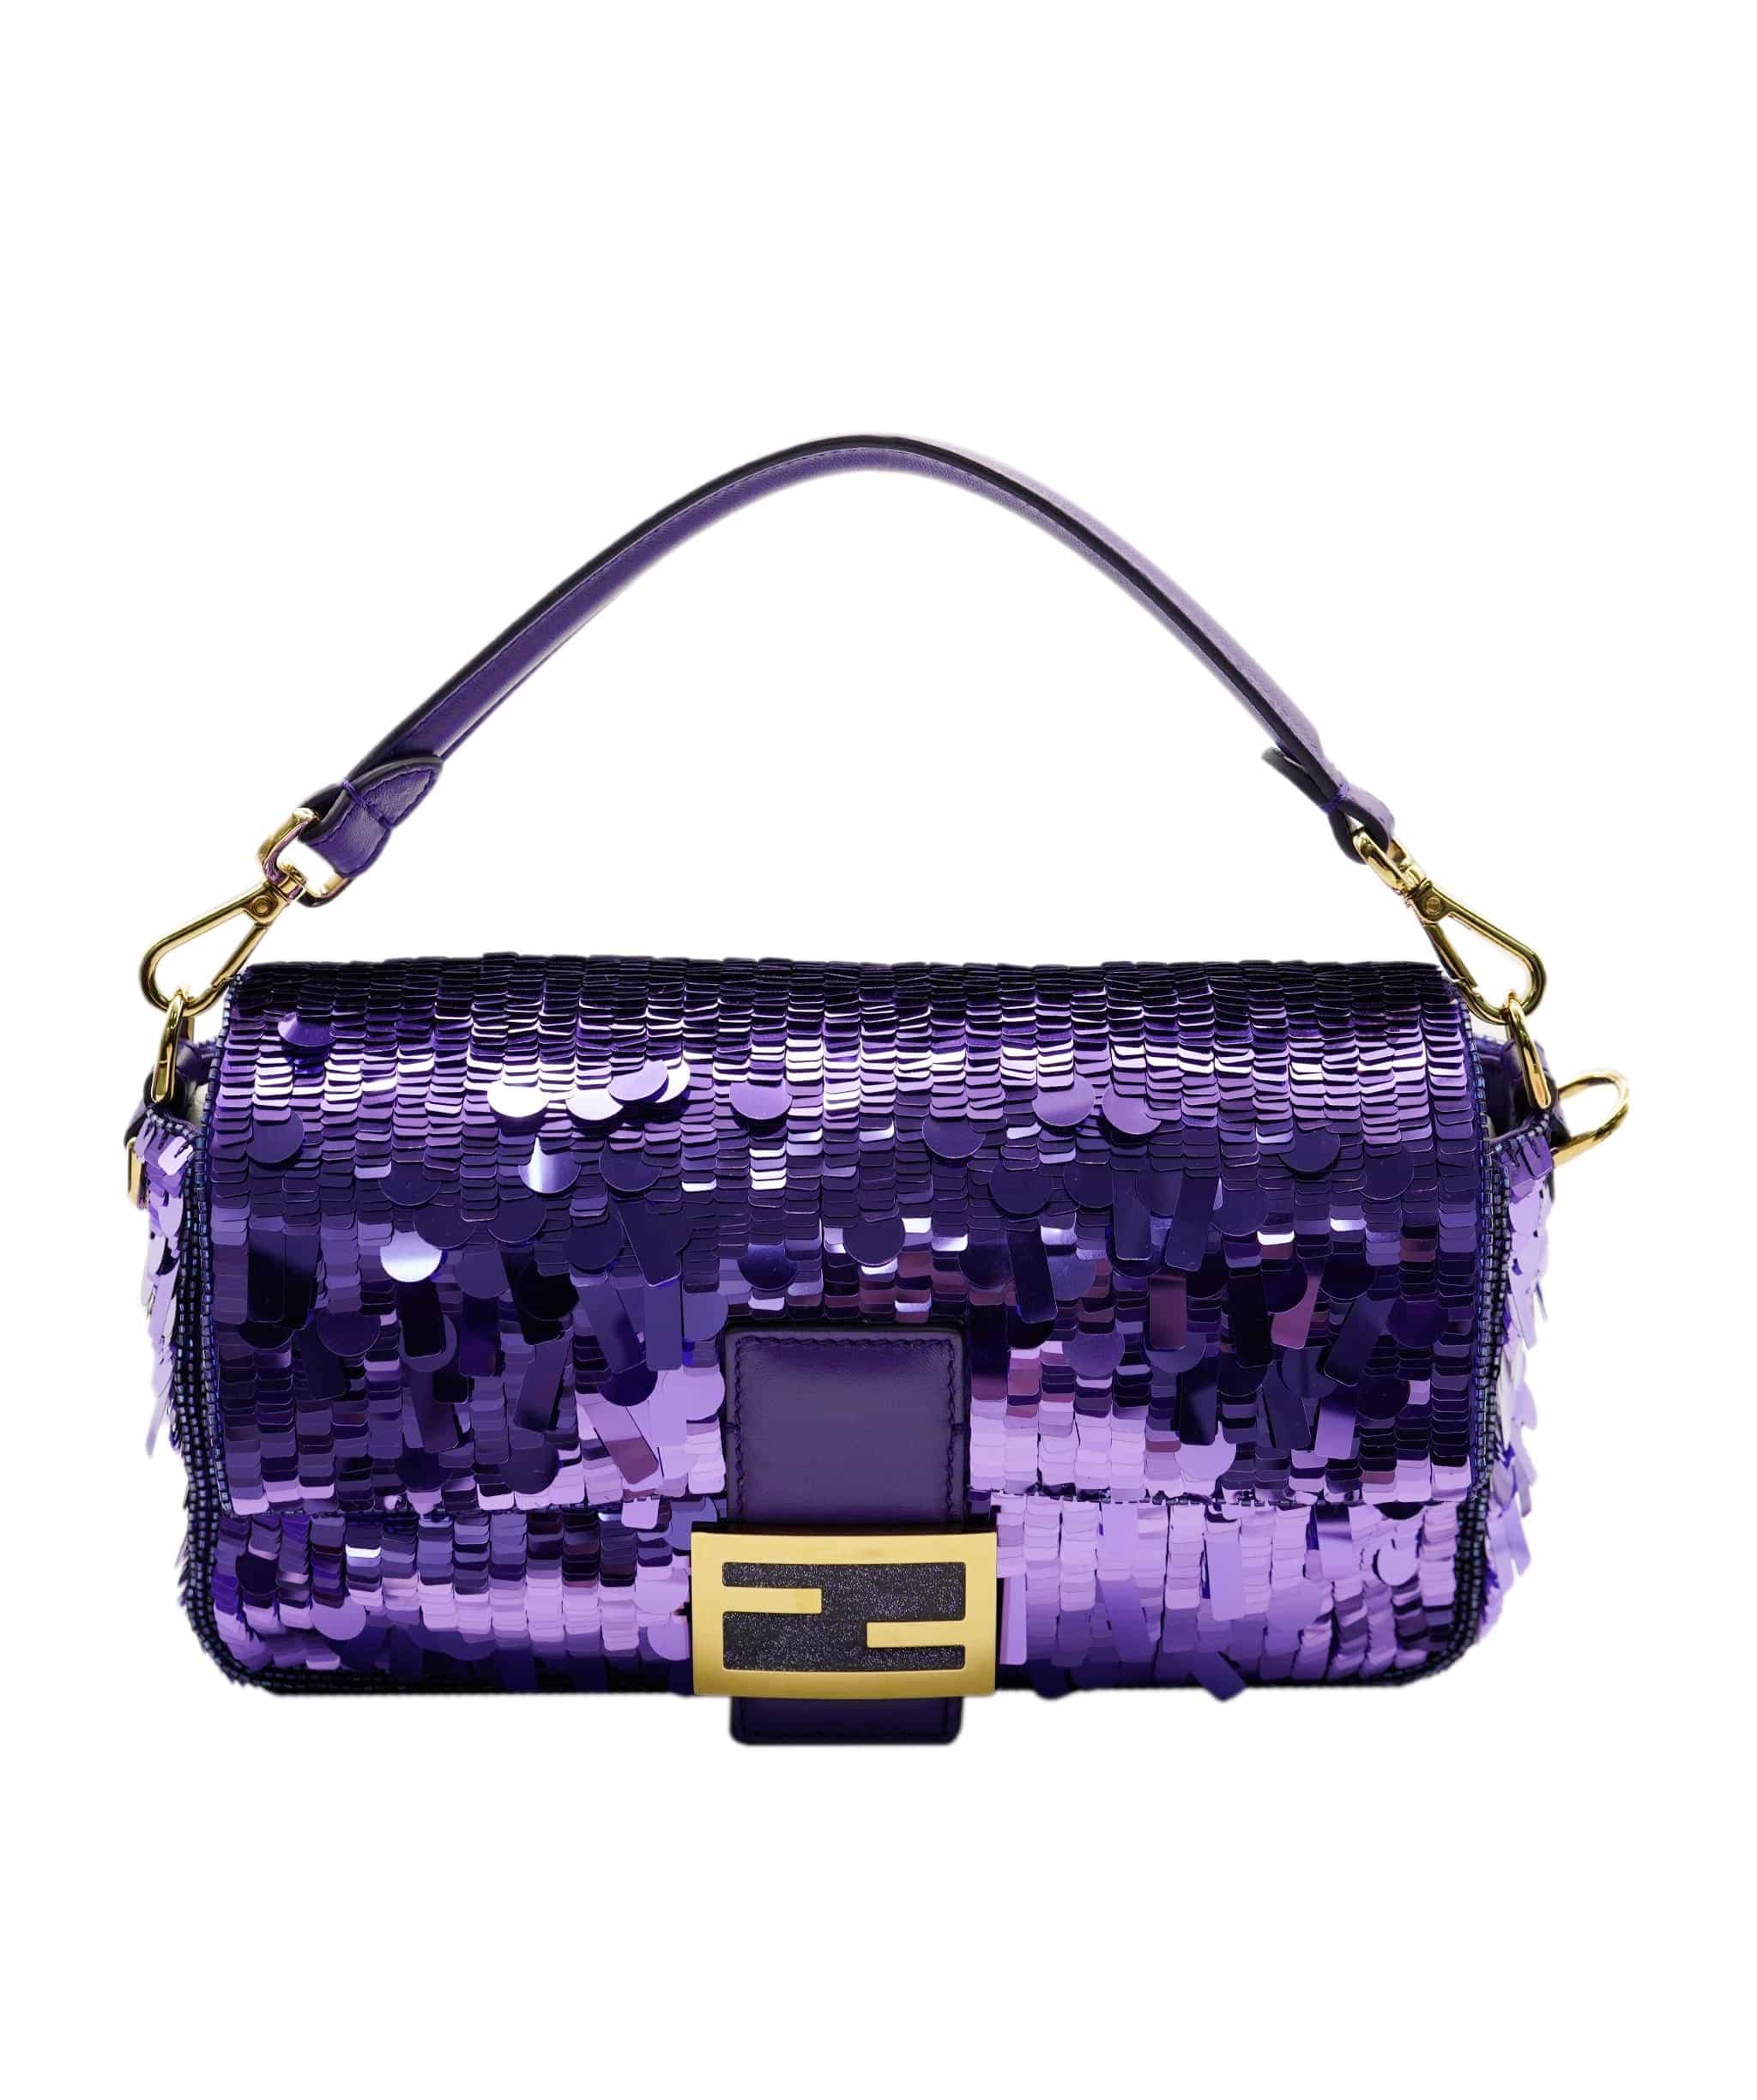 Baguette glitter handbag Fendi Purple in Glitter - 31473660